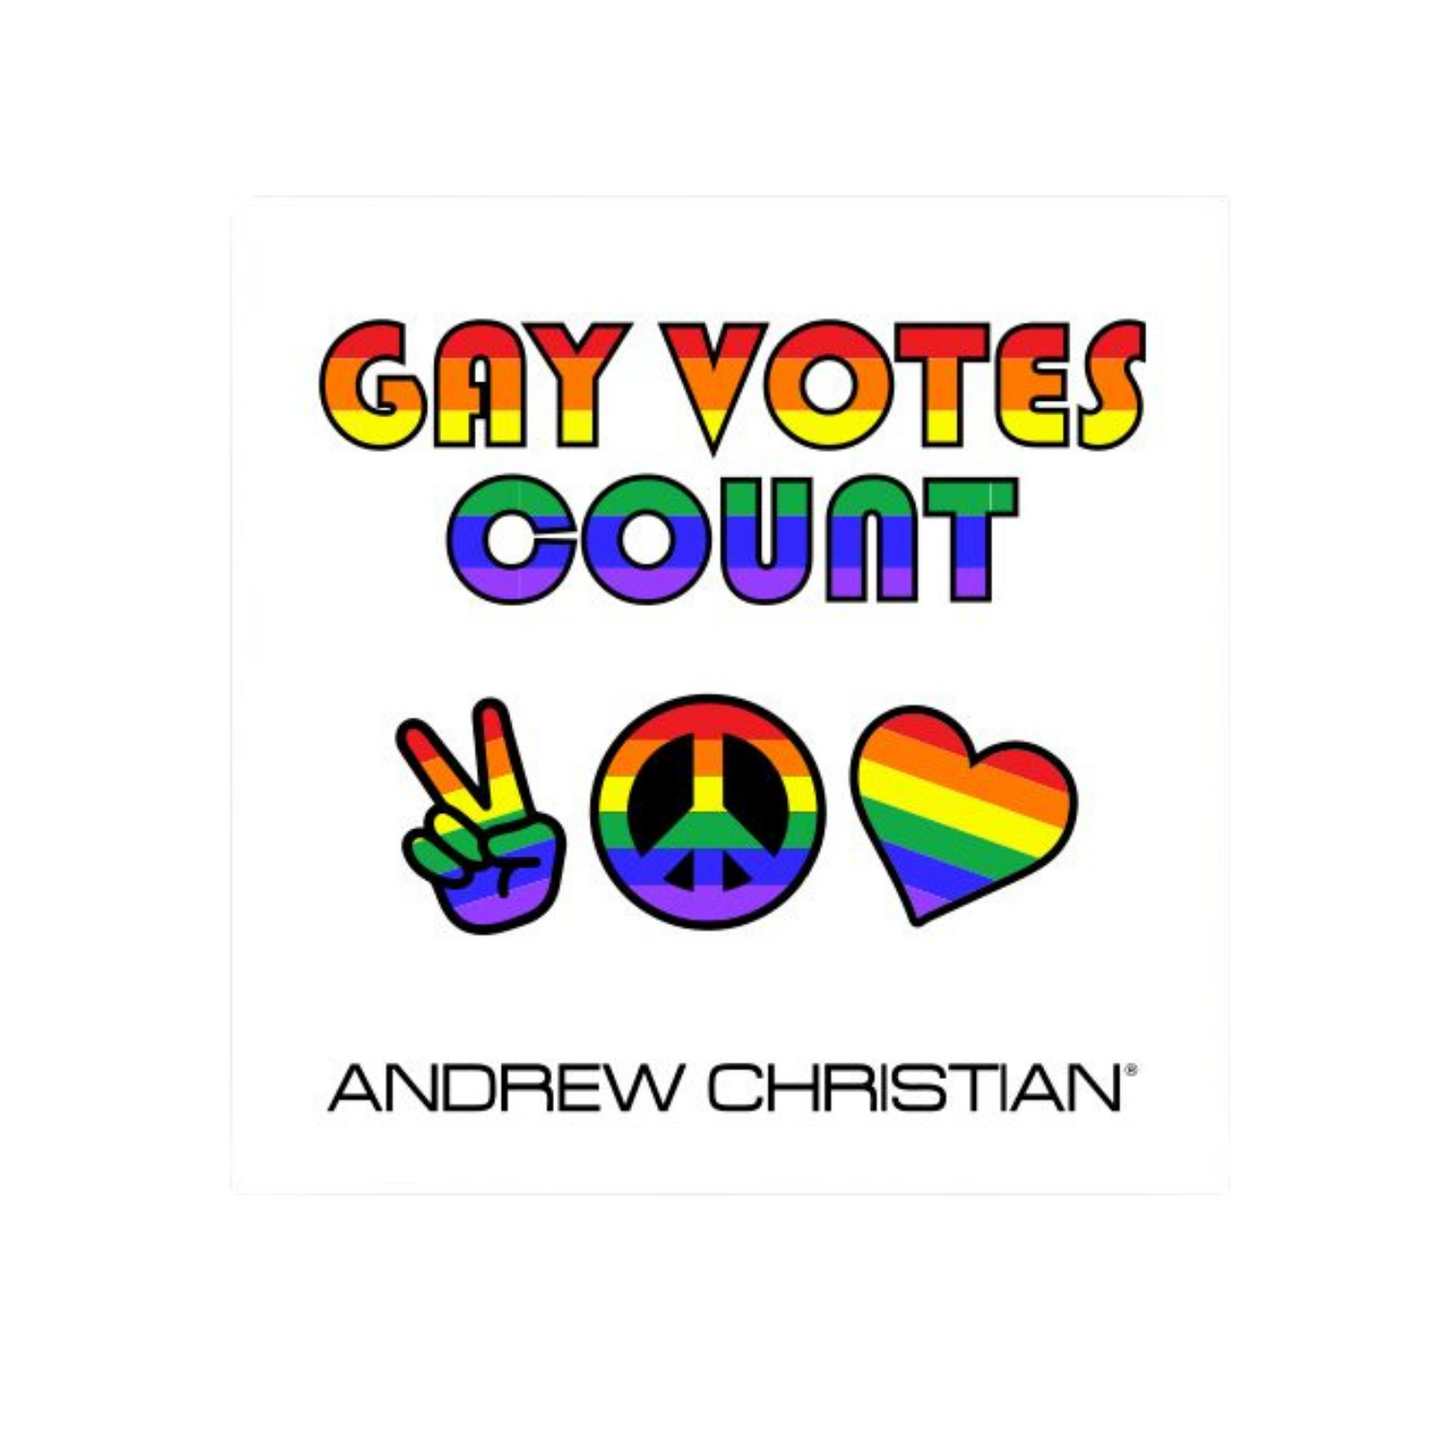 Leuke stickers met gay thema of LGBTQ+ thema, zoals deze leuke stickers ontworpen door Andrew Christian koop je bij Flavourez! Deze "Gay Votes Count" sticker is erg uniek! Door deze producten te kopen steun je kleine en grote LGBTQ+ of Gay ondernemingen. Ben trots op wie je bent!